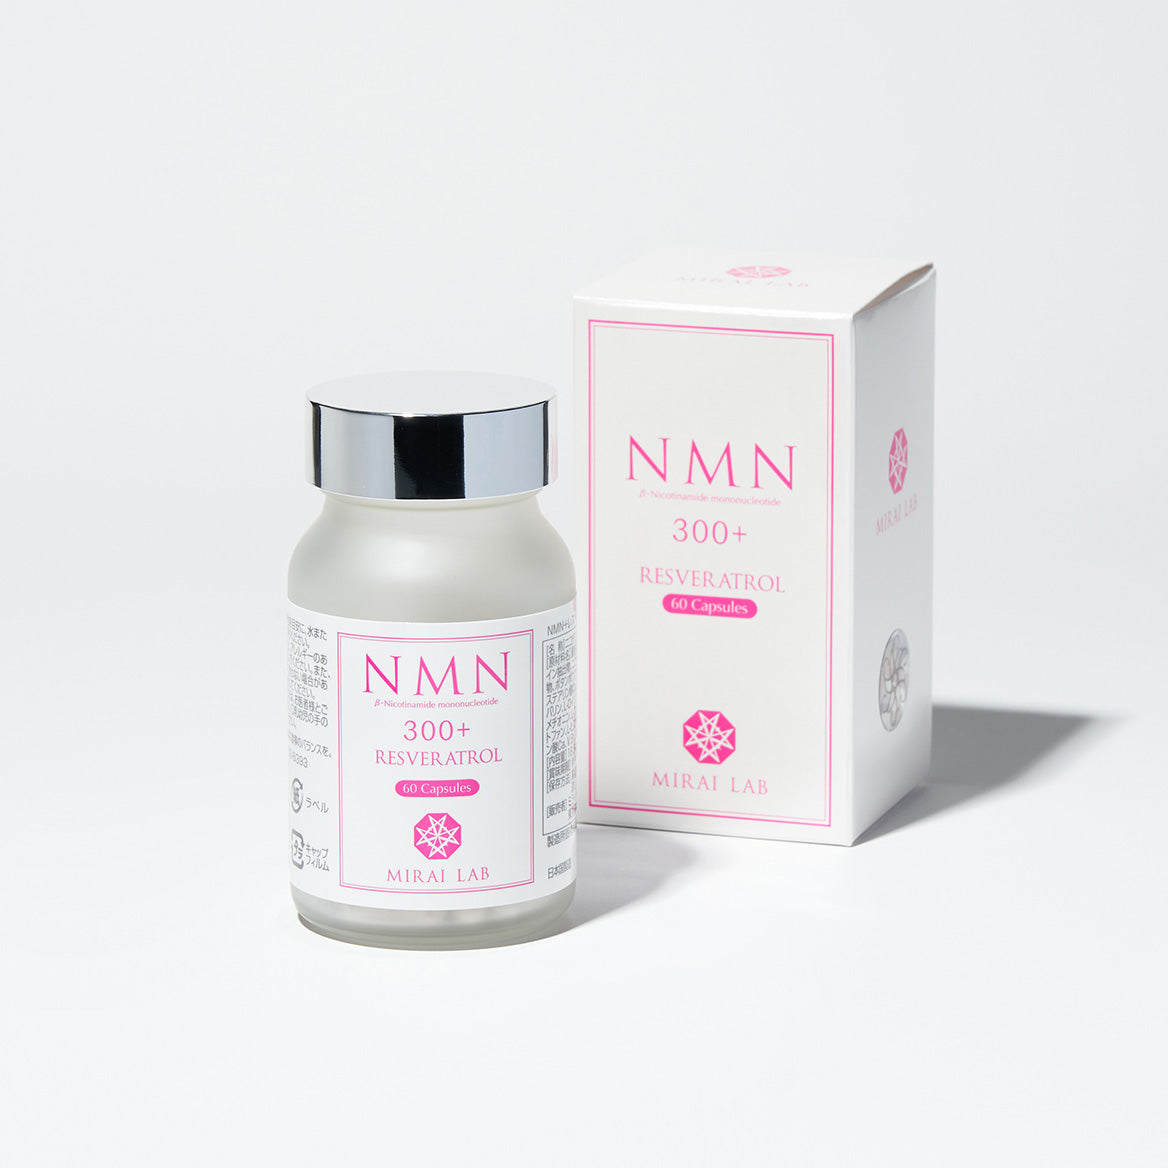 【定期購入】NMN + レスベラトロール プラス ( 60 カプセル )